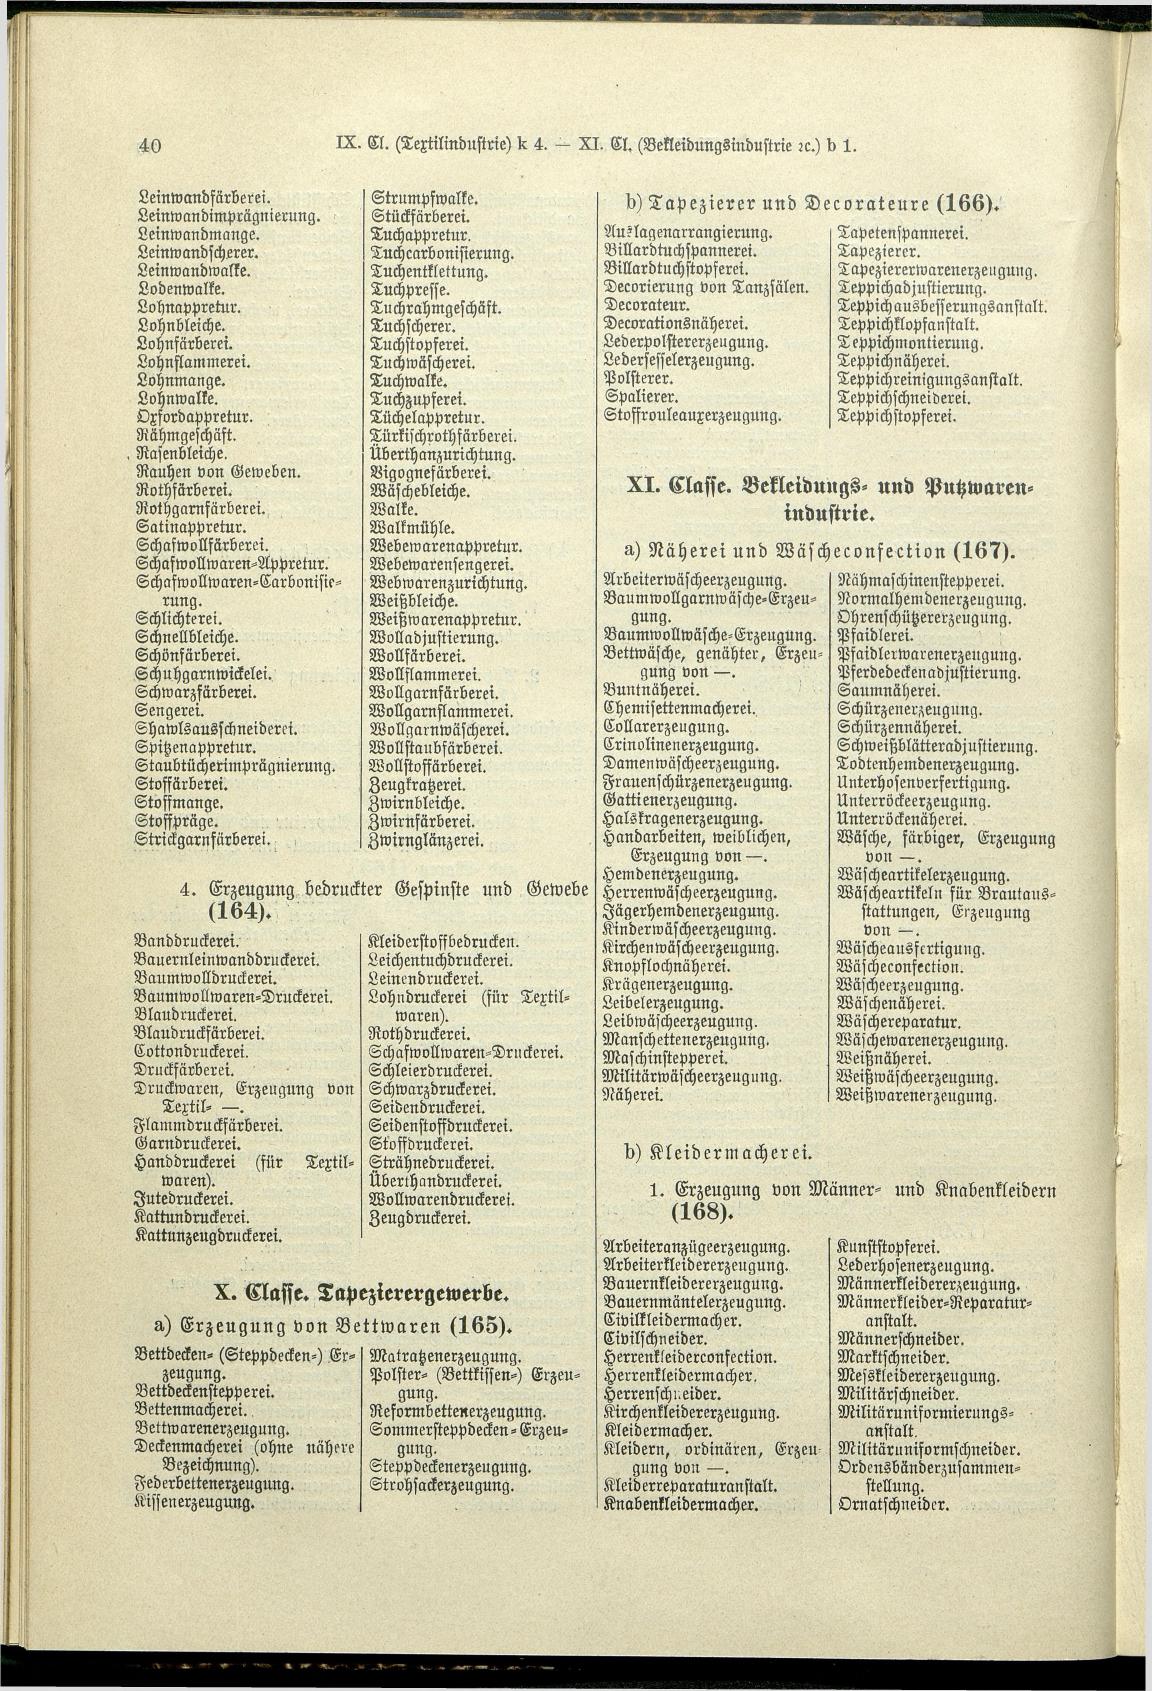 Verzeichnis der Gewerbe der im Reichsrathe vertretenen Königreiche und Länder 1900 - Page 44